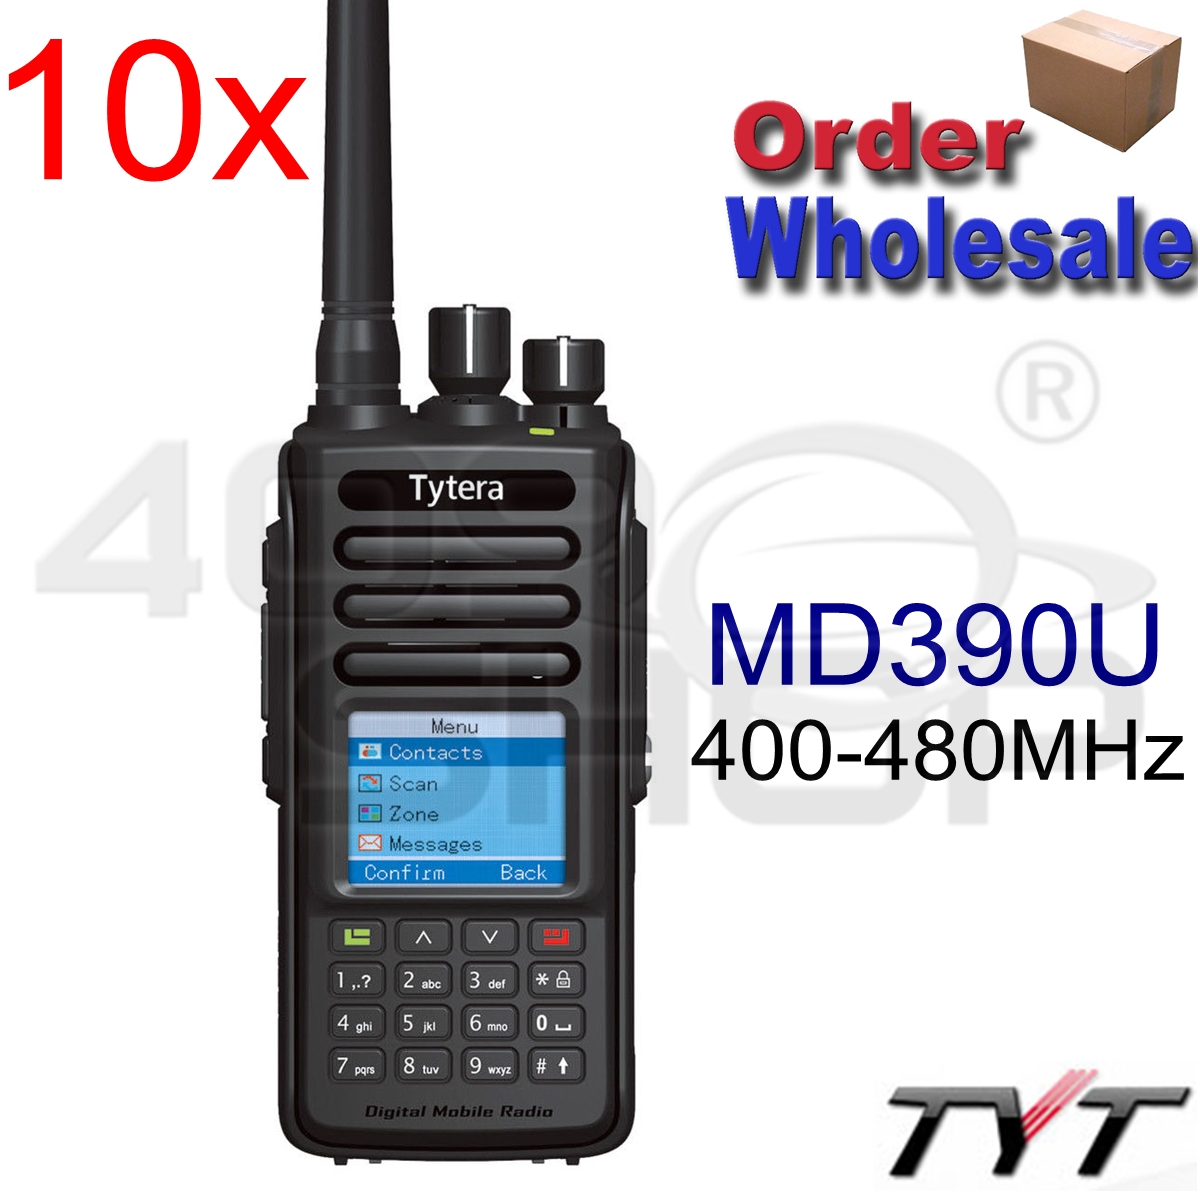 TYT MD-390 IP67 Waterproof Handheld Transceiver Two Way Radio DMR Digital Walkie